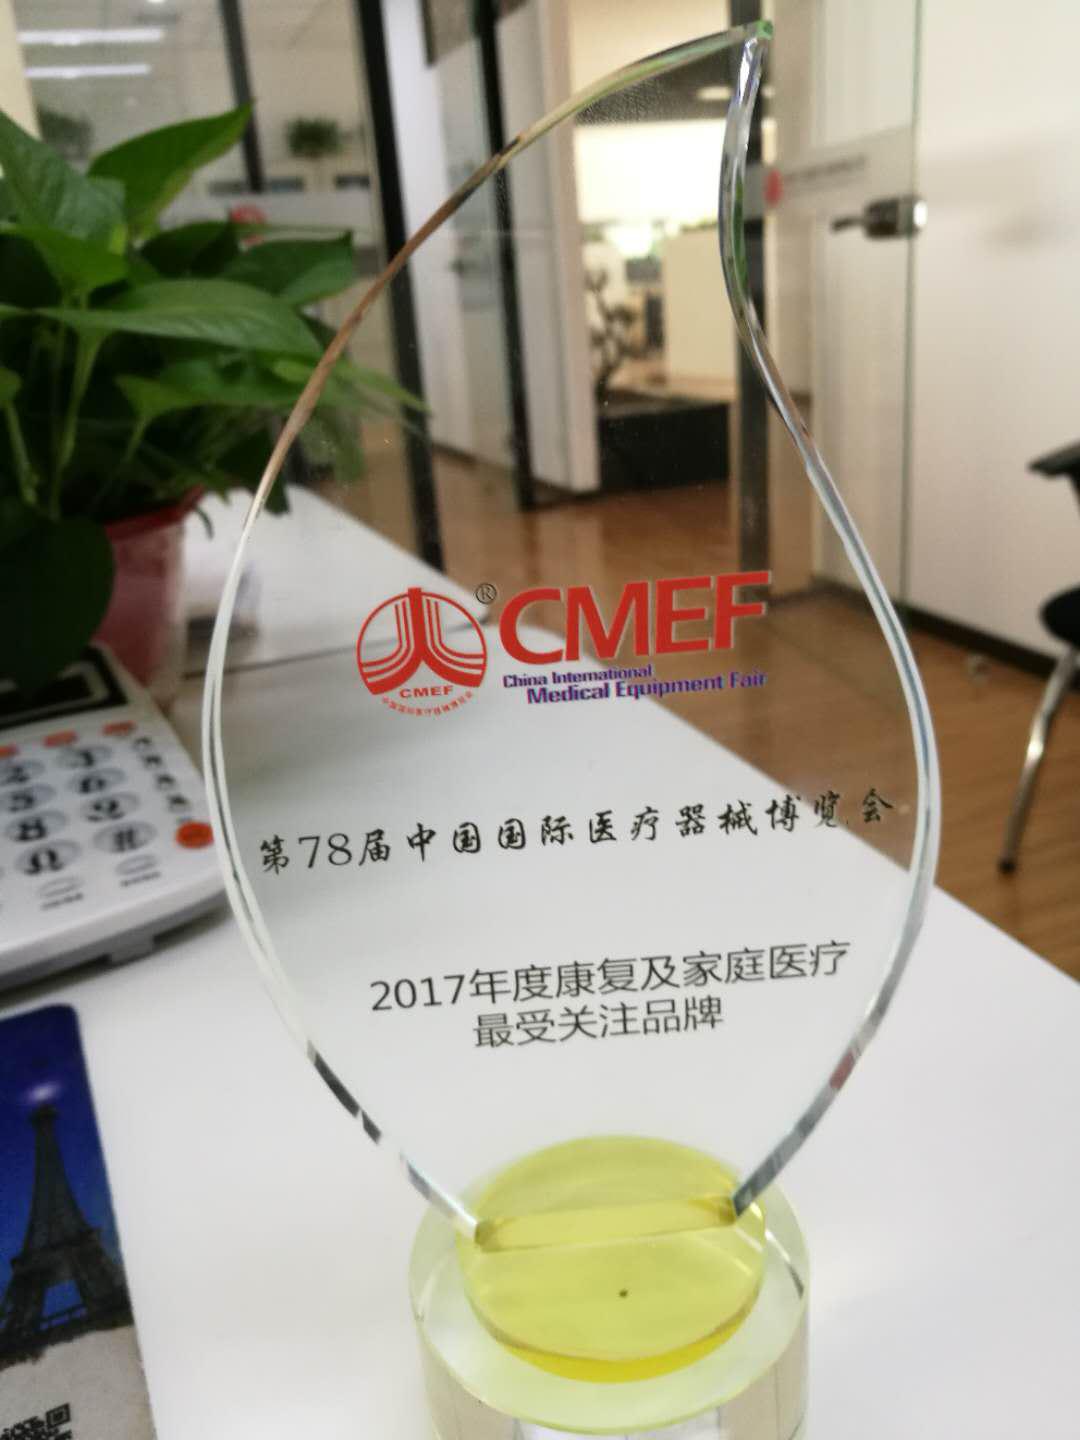 飞龙医疗获得2017年度康复及家庭医疗最受关注品牌奖杯